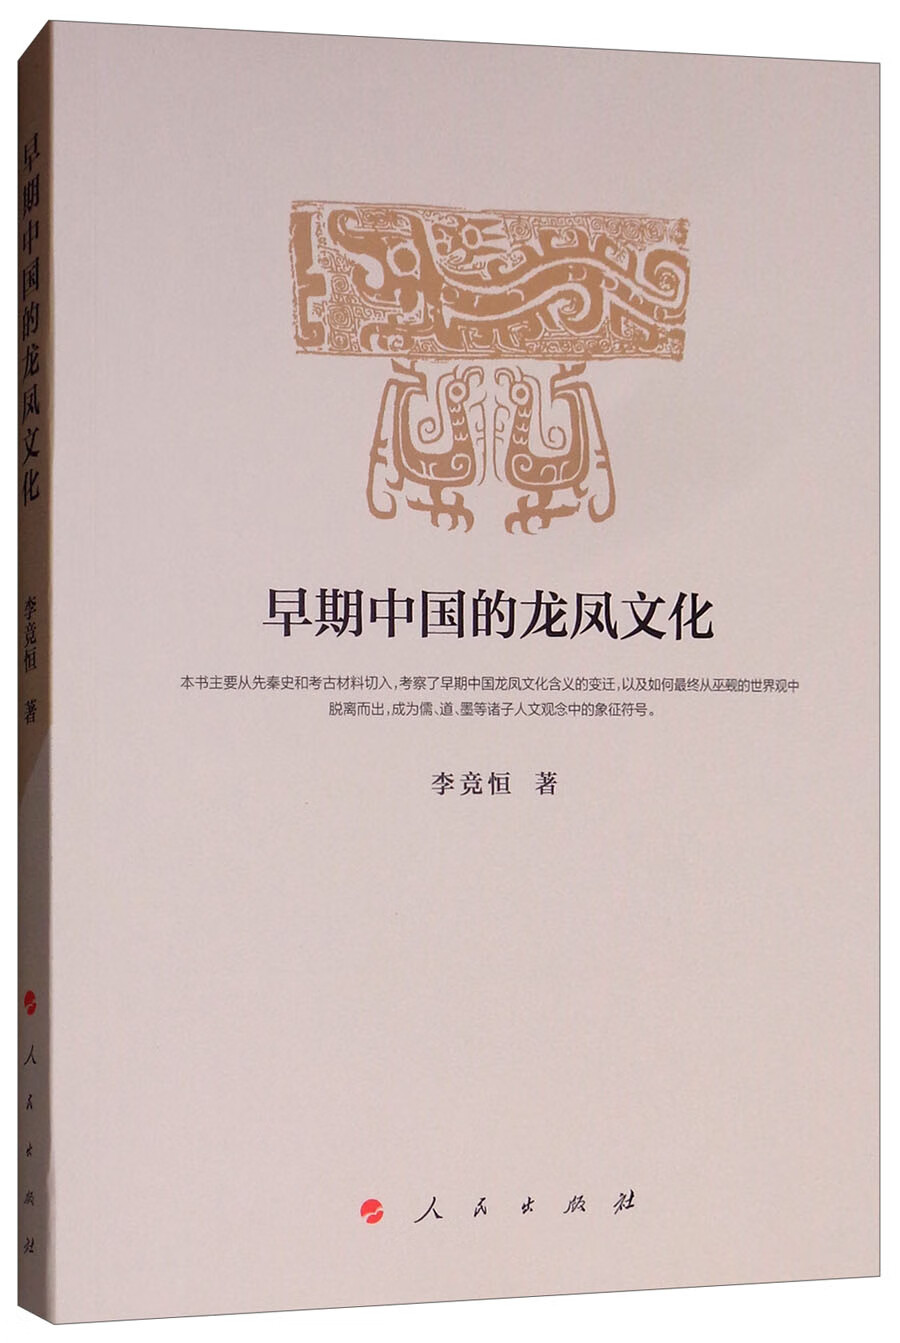 早期中国的龙凤文化 epub格式下载